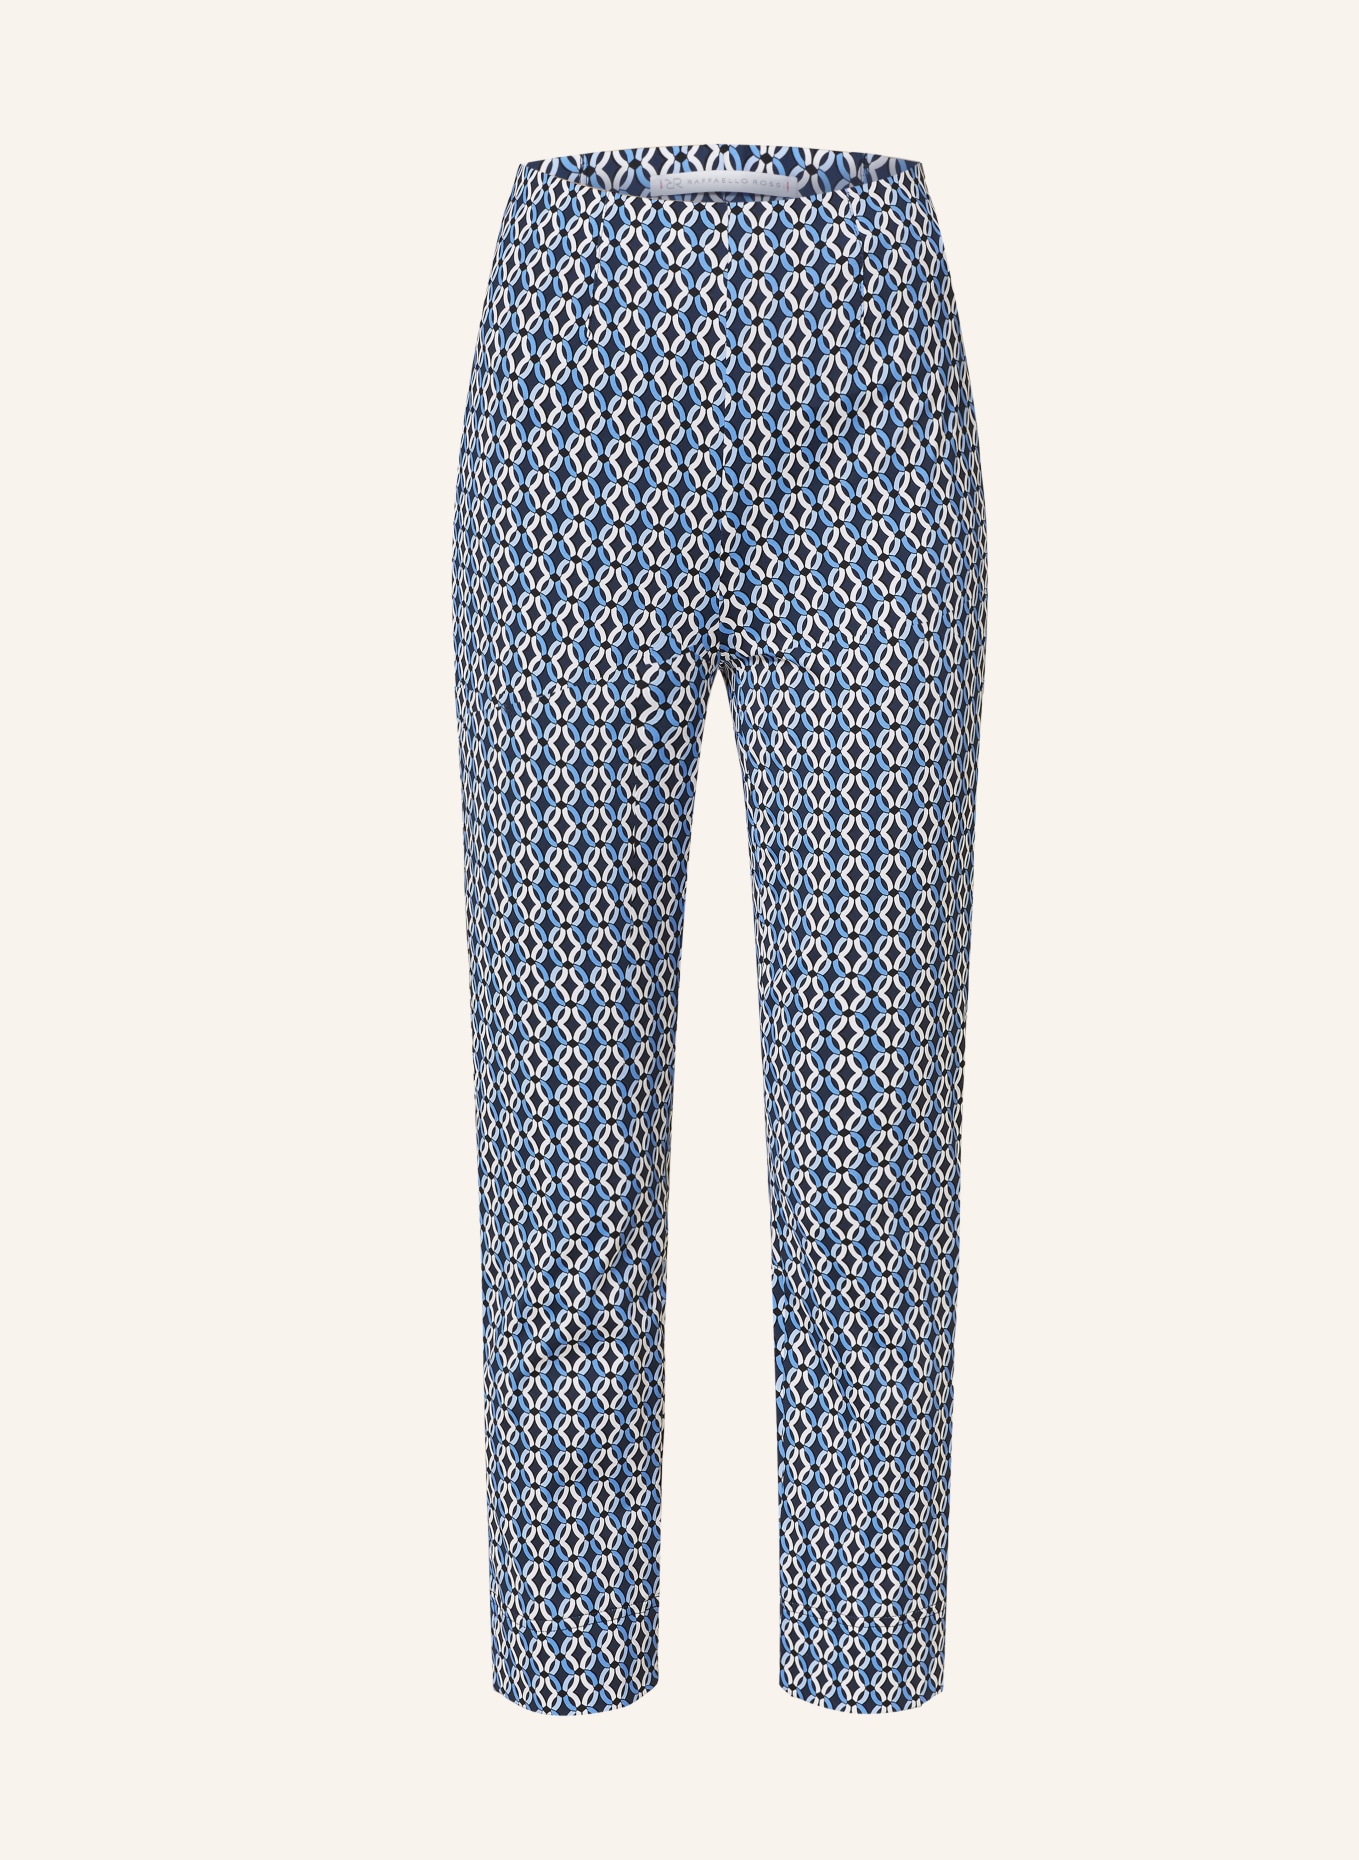 RAFFAELLO ROSSI 7/8 trousers PENNY, Color: DARK BLUE/ WHITE/ LIGHT BLUE (Image 1)